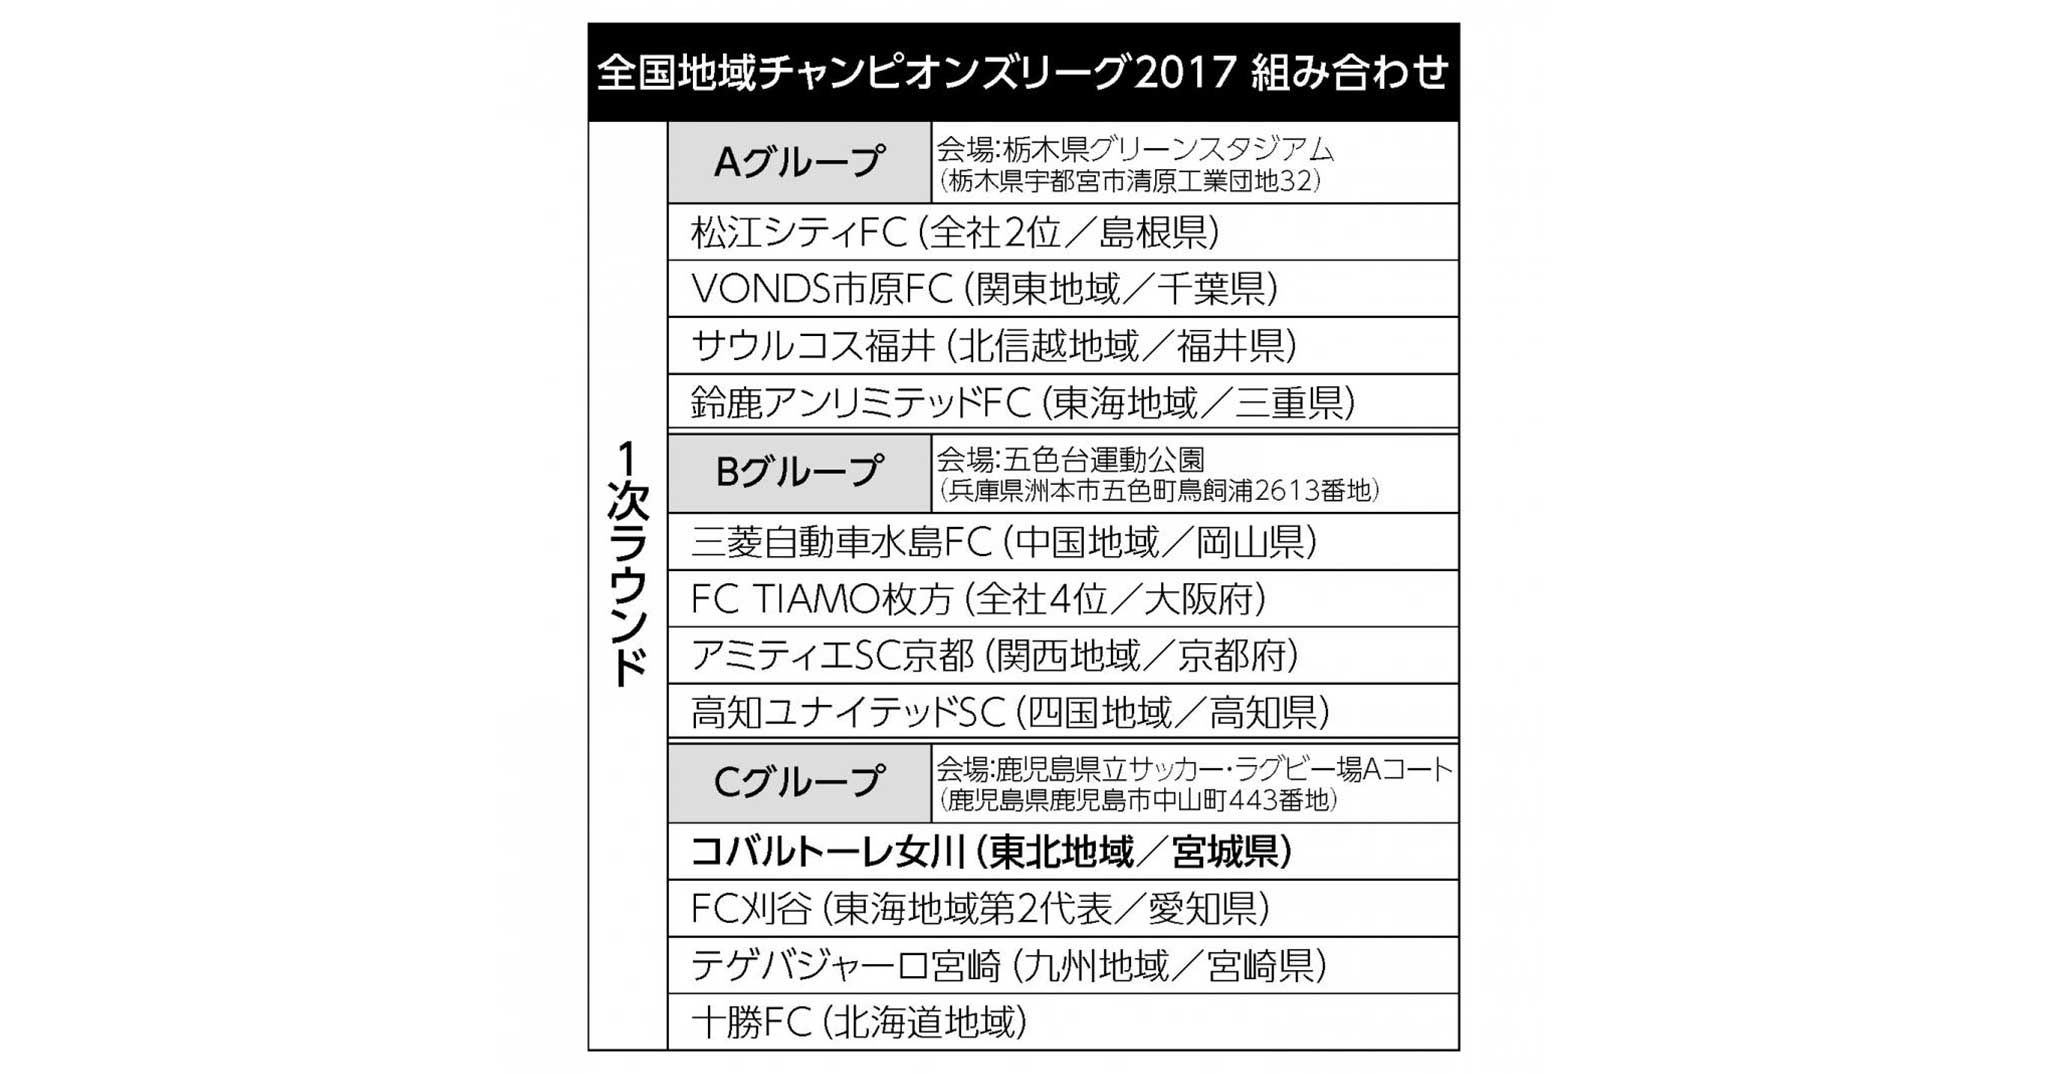 全国地域サッカーチャンピオンズリーグ17 組み合わせ 写真 石巻日日新聞